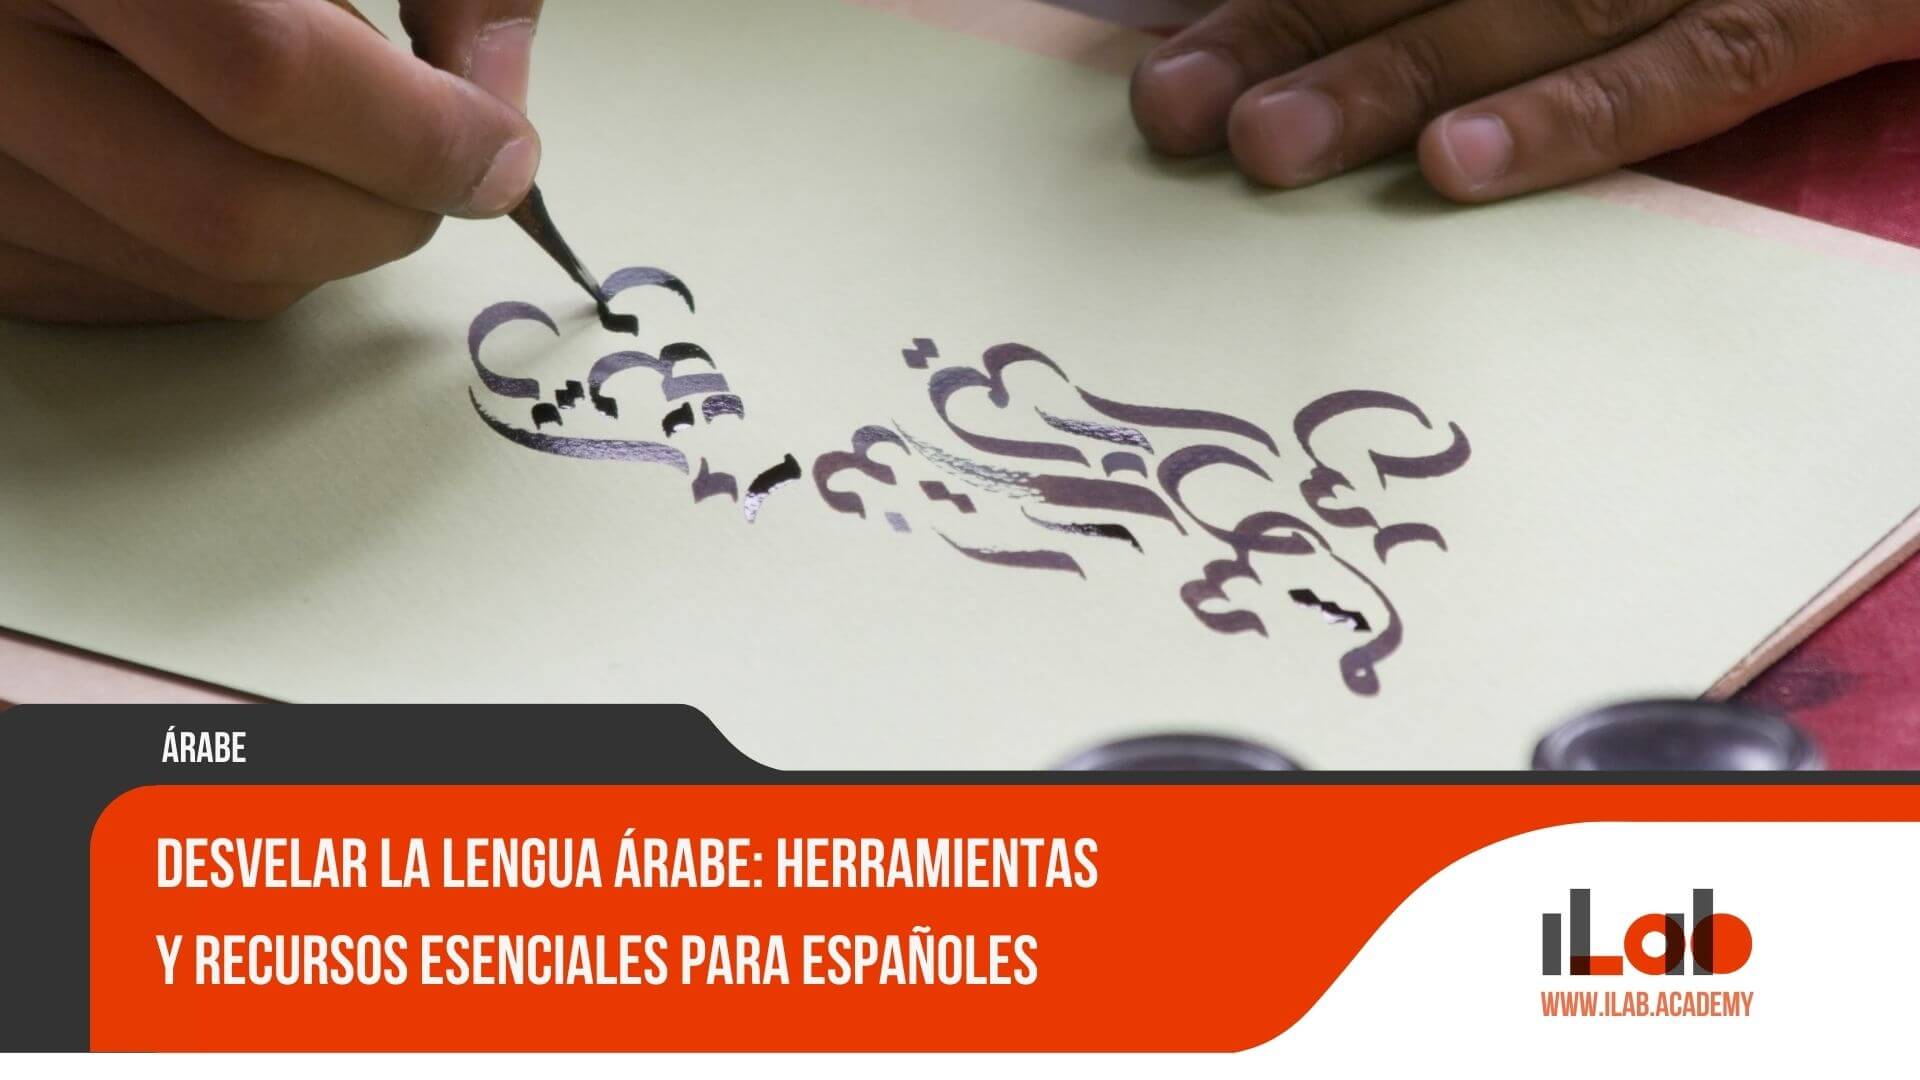 Desvelar la lengua árabe: Herramientas y recursos esenciales para españoles